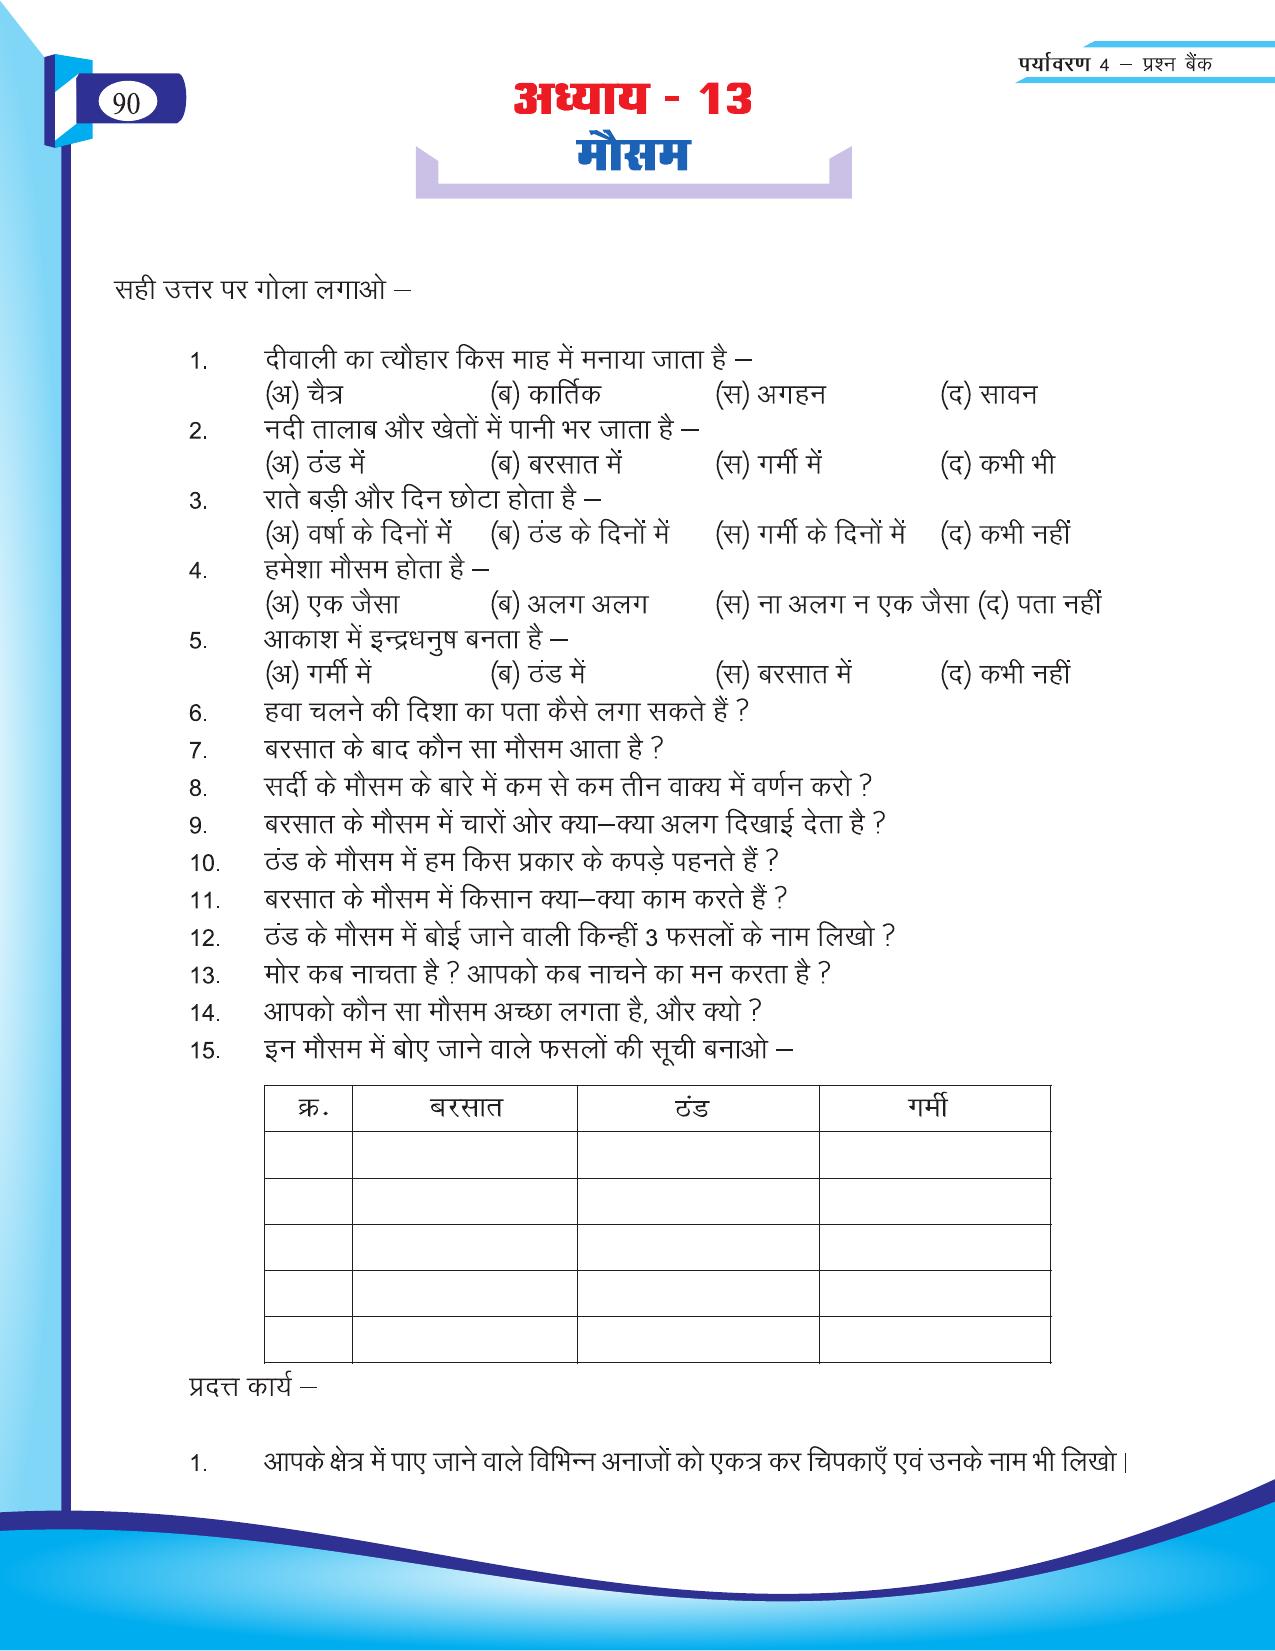 Chhattisgarh Board Class 4 EVS Question Bank 2015-16 - Page 19